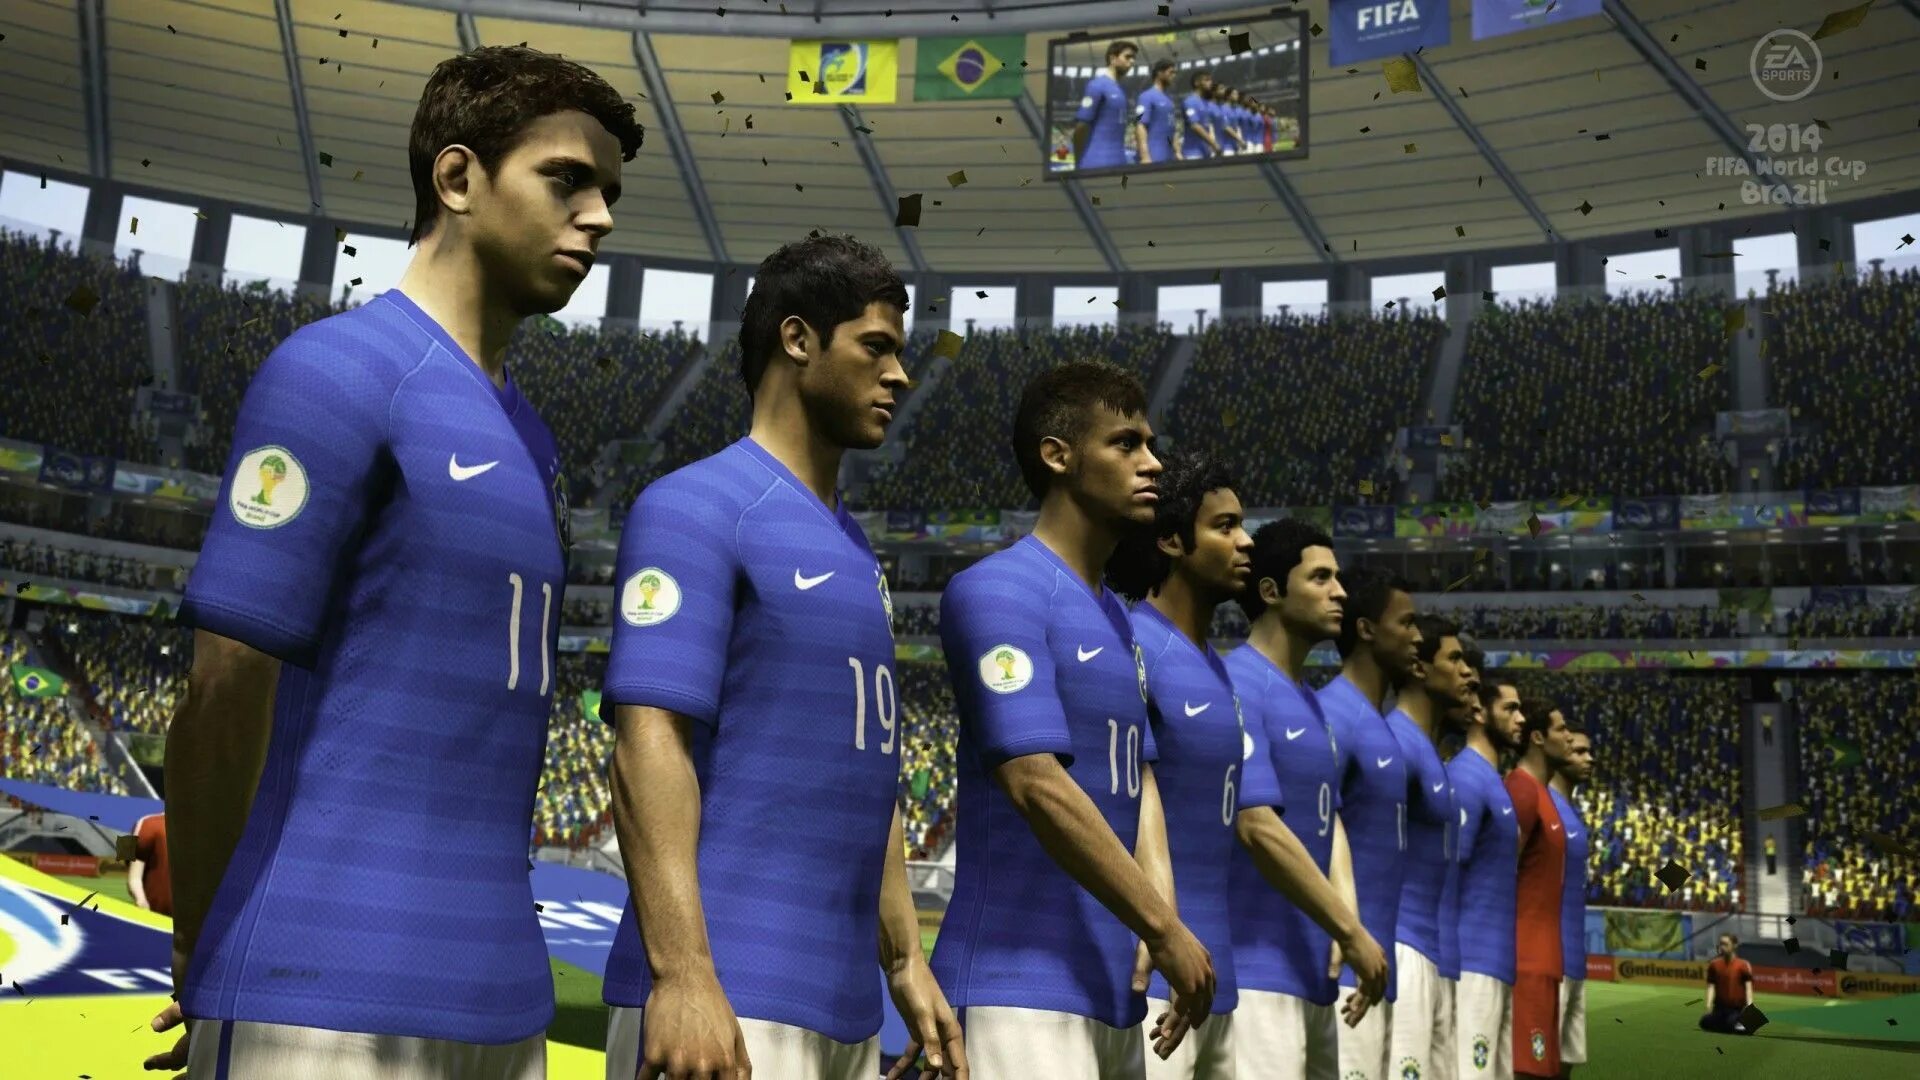 2014 FIFA World Cup Brazil компьютерная игра. ФИФА Бразилия 2014 игра. FIFA 14 World Cup Brazil.